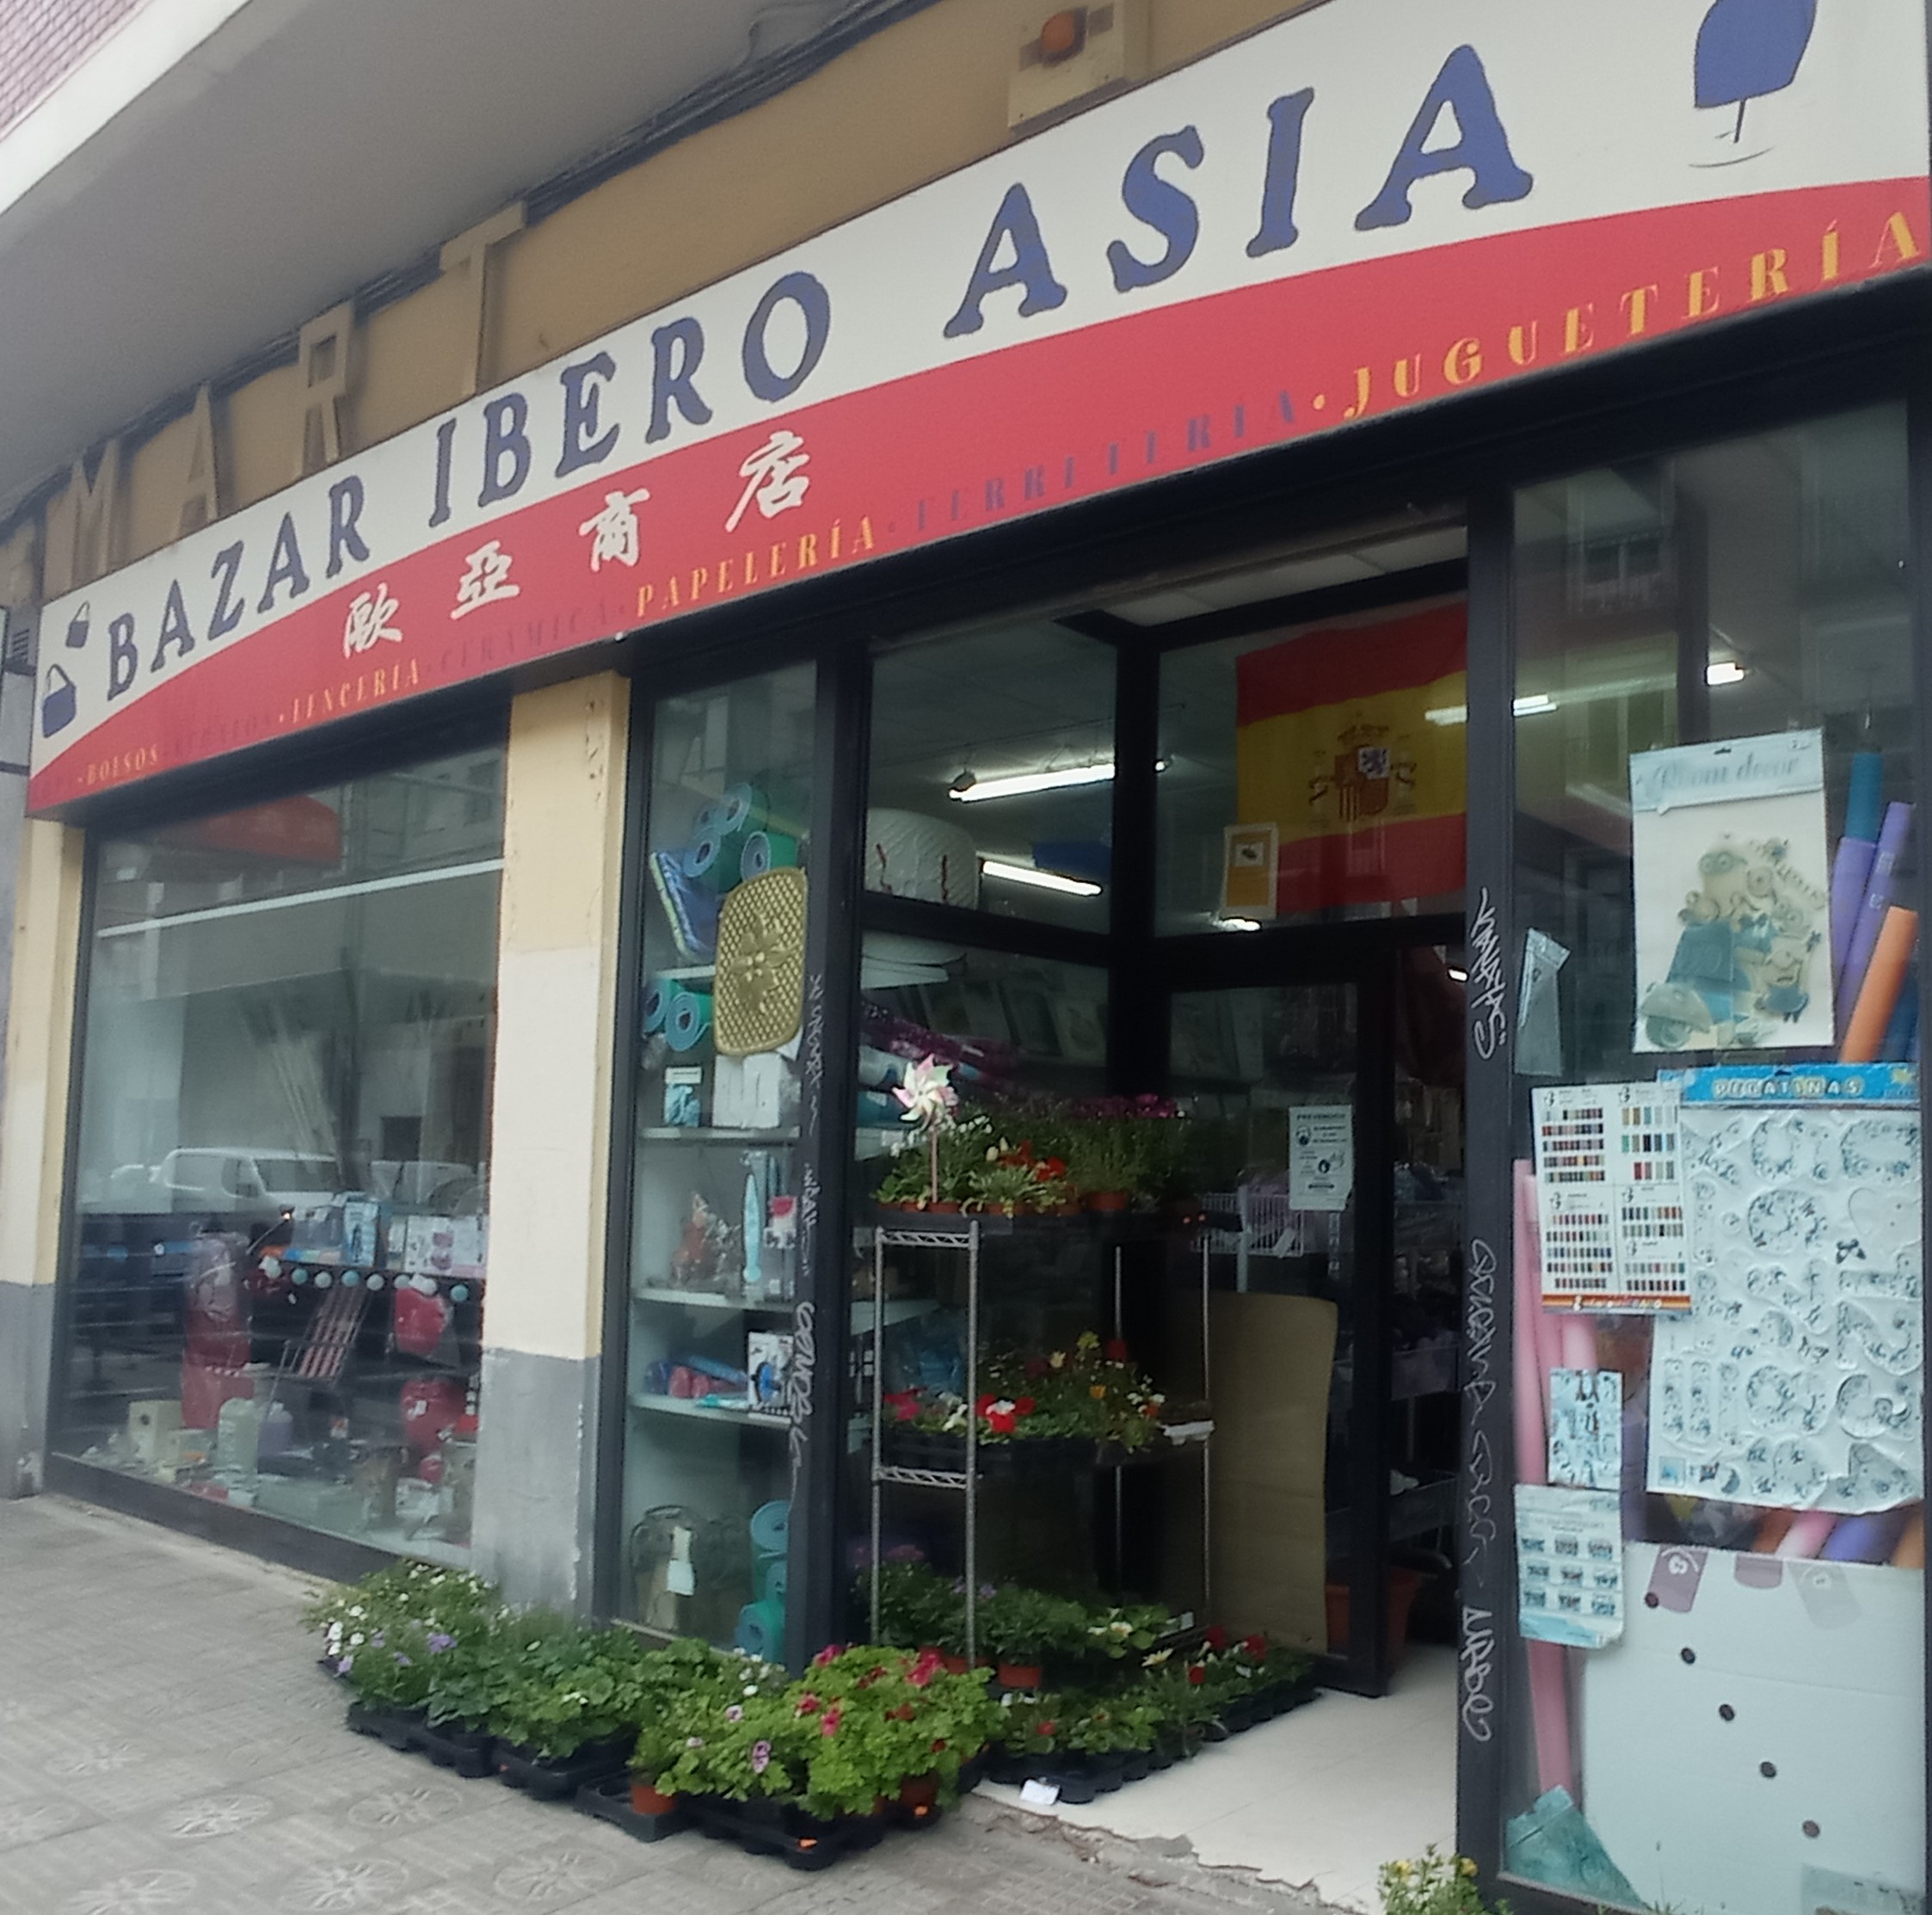 Bazar Iberoasia